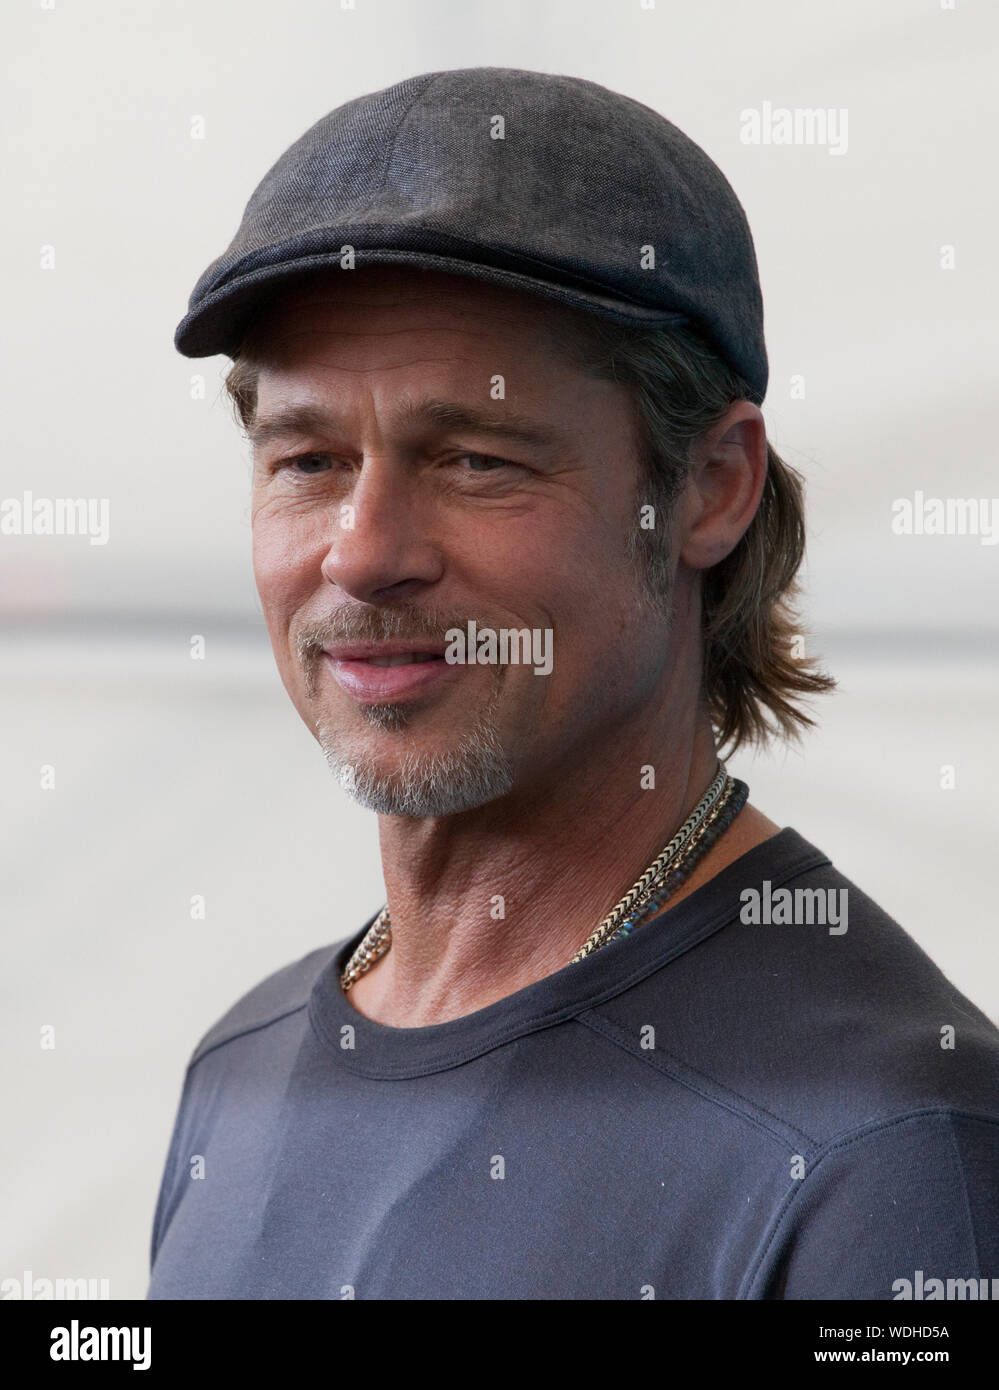 Brad Pitt au photocall pour le film Ad Astra à la 76e Mostra de Venise, le jeudi 29 août 2019, Venise, Italie. Banque D'Images